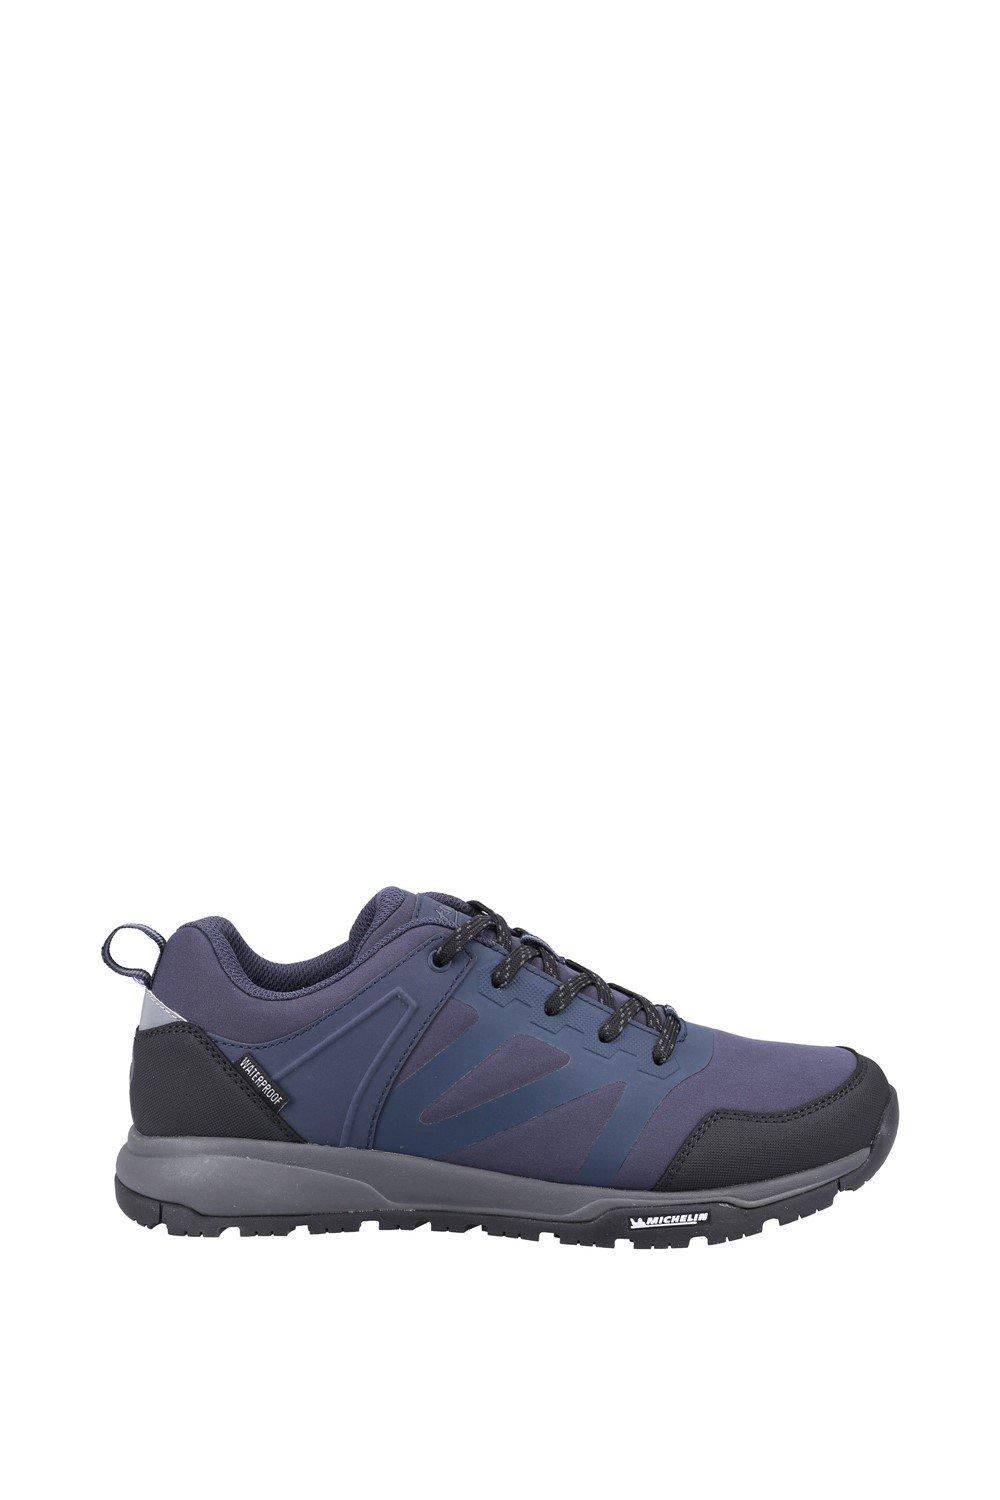 Мужские низкие ботинки Kingham Cotswold, темно-синий free soldier тактические мужские альпинисткие спортивные дышащие кроссовки для пешего туризма